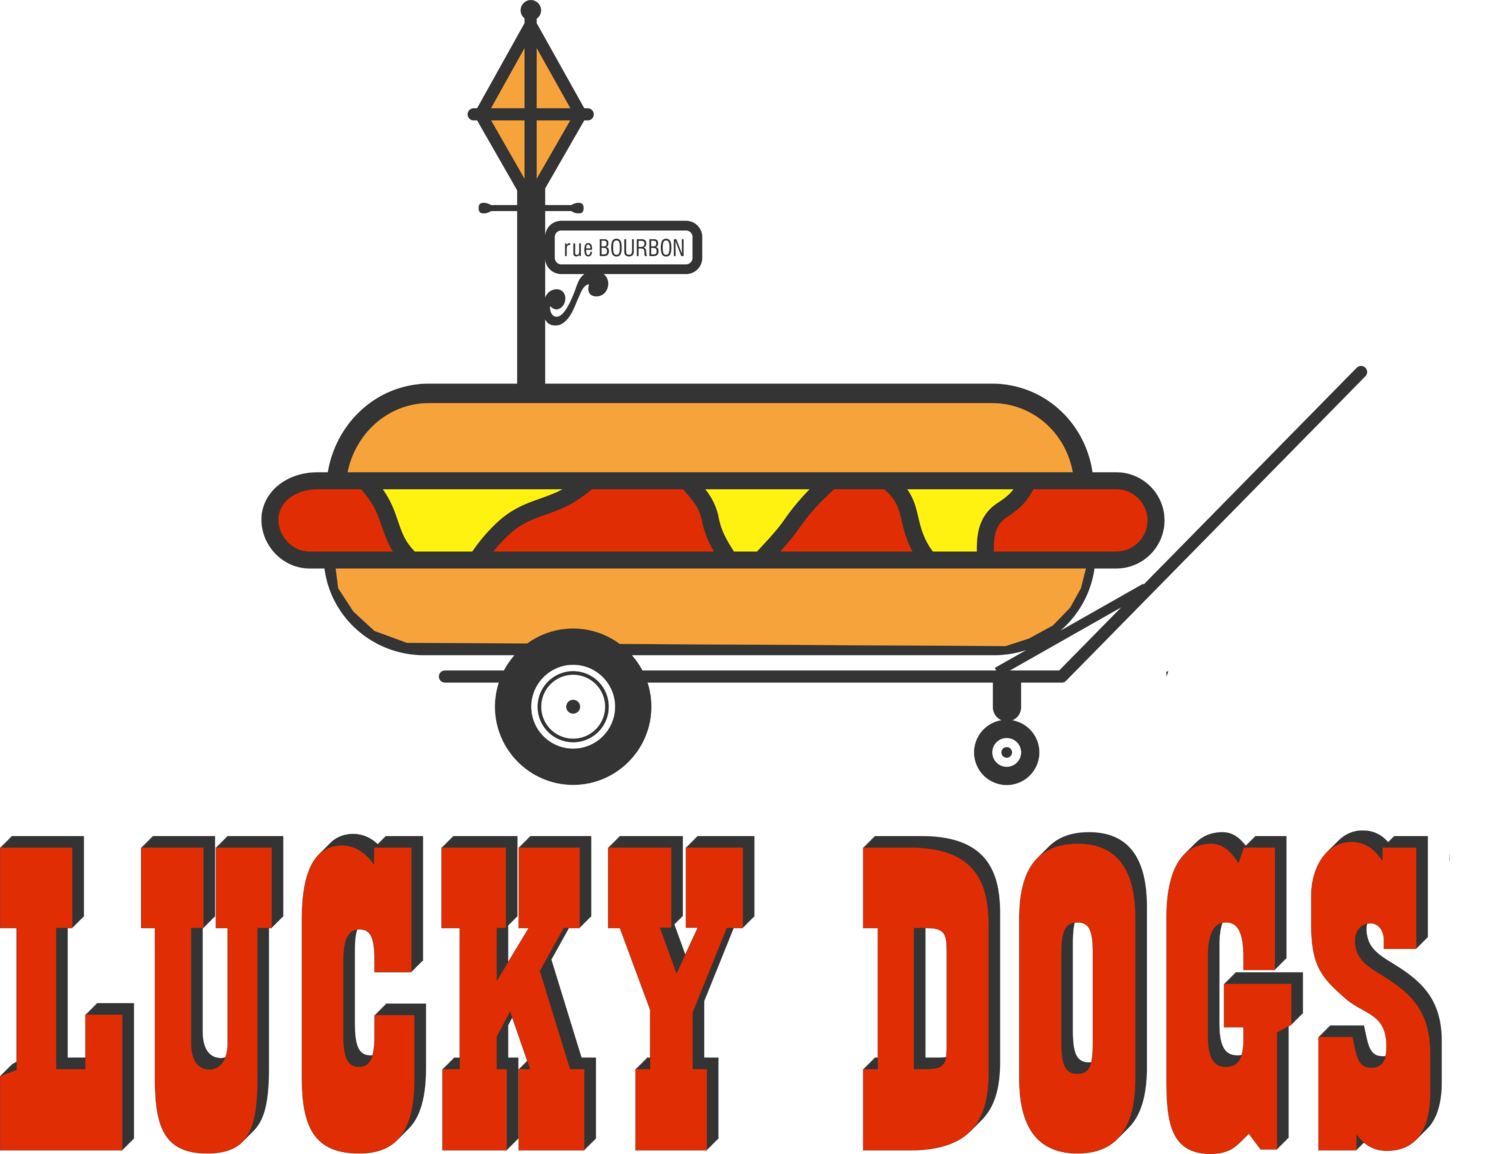 Lucky Dogs logo